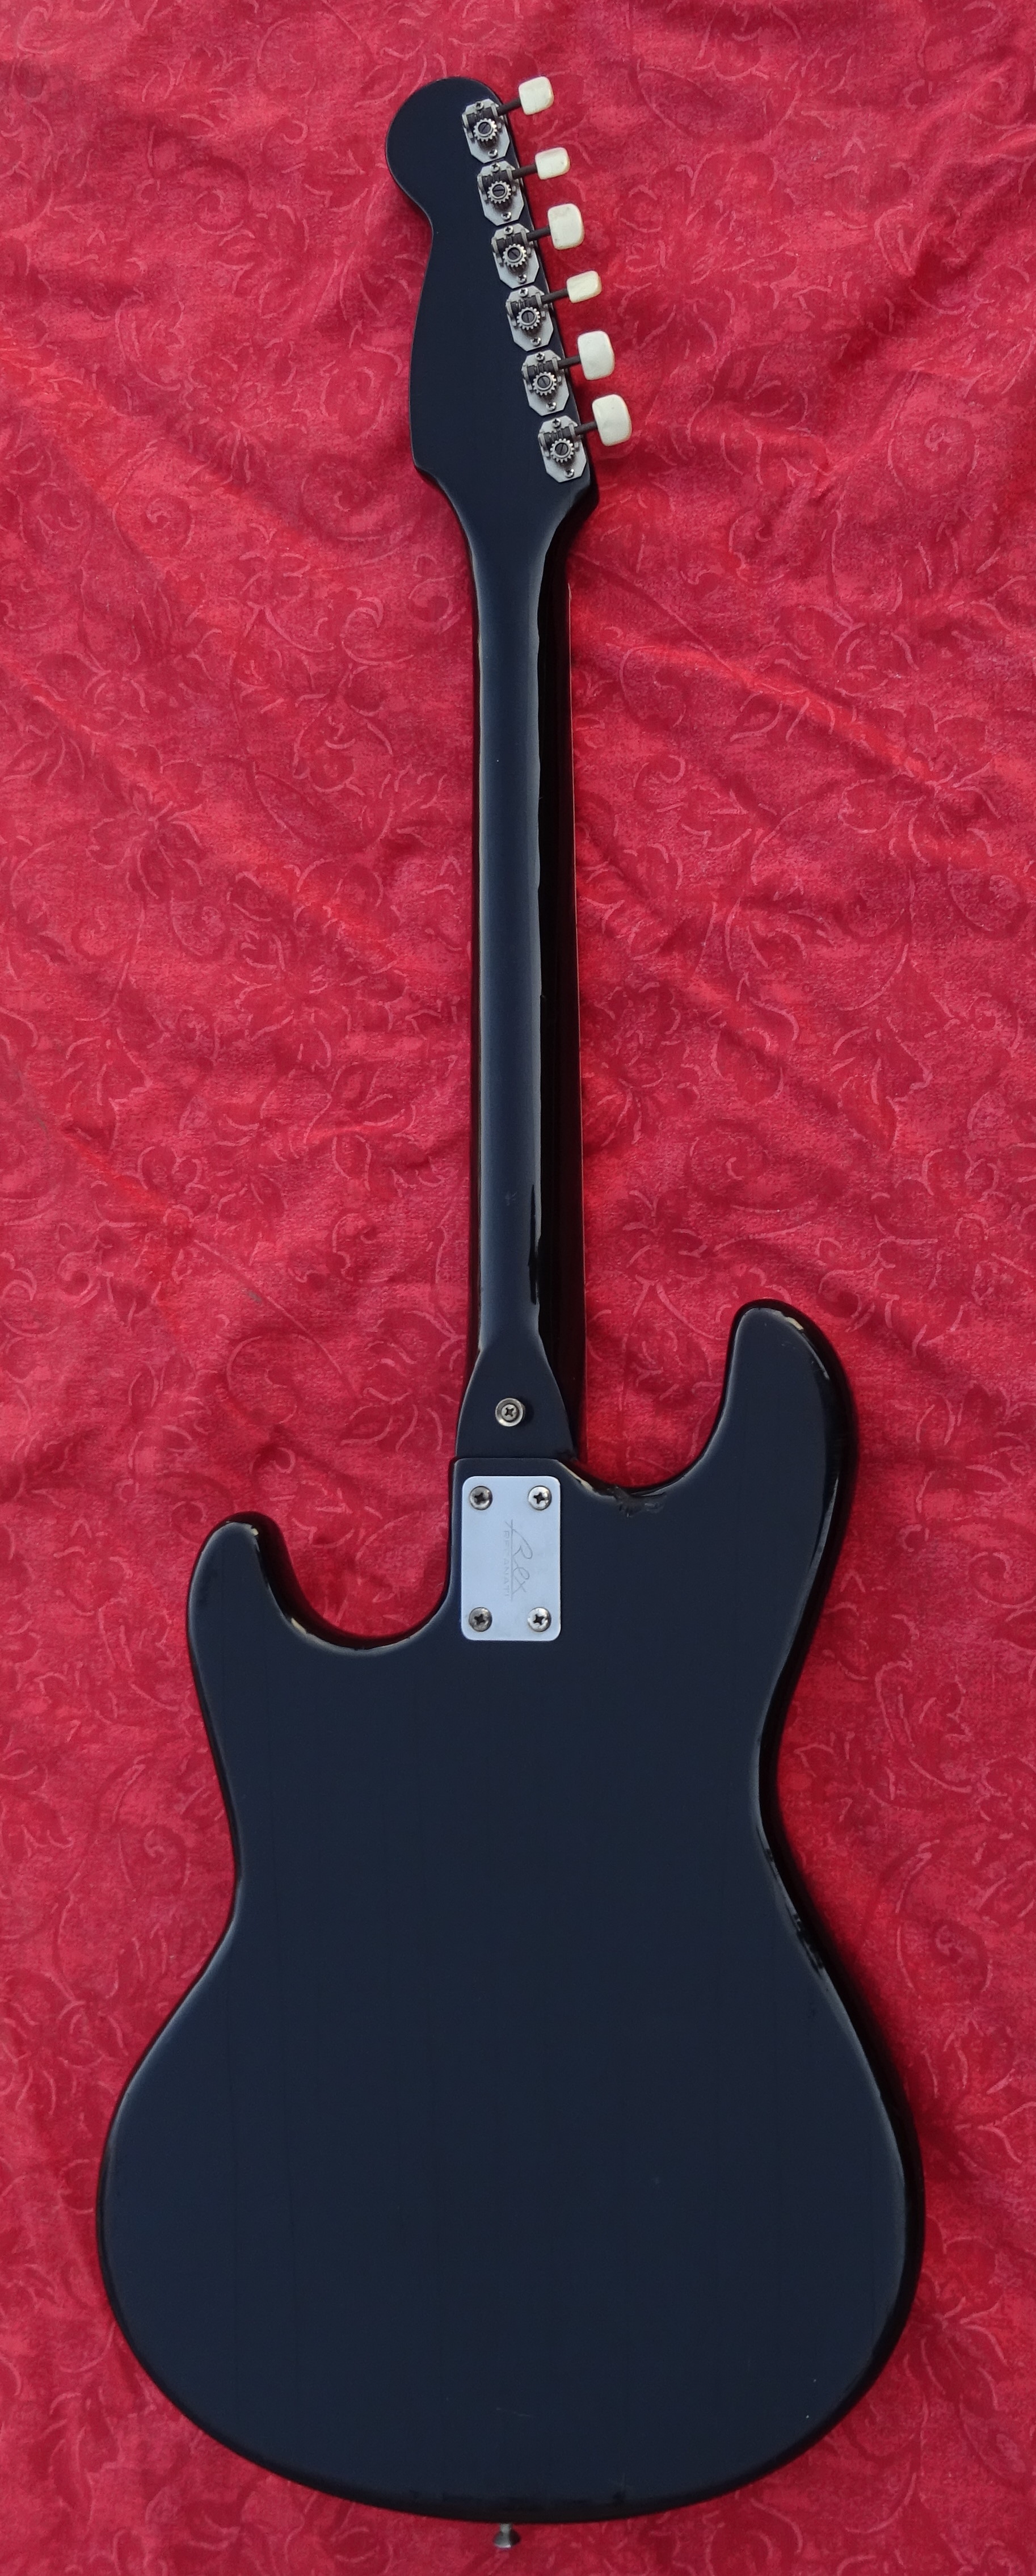 bartolini guitar for sale